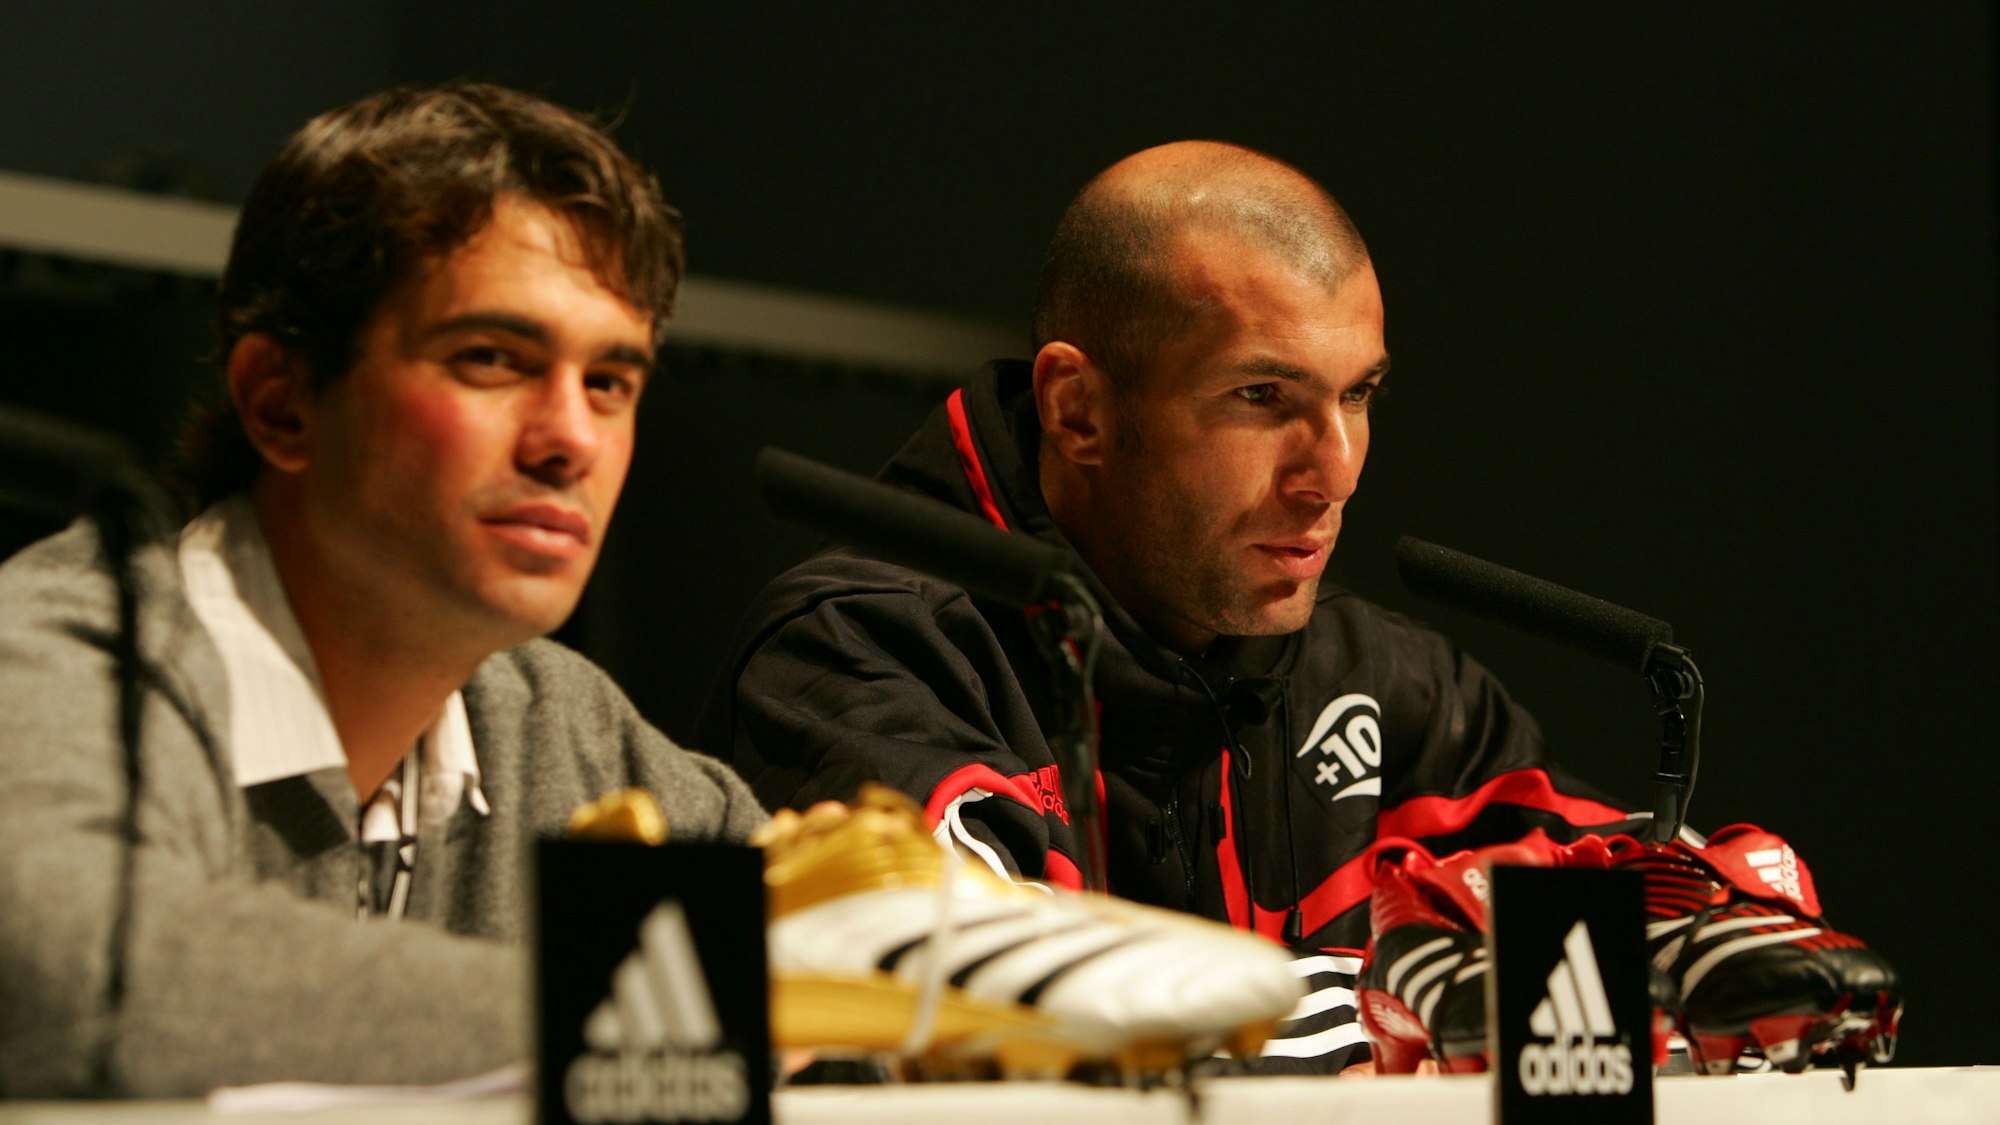 Alberto de Torres 2005 mit Zinedine Zidane bei der Vorstellung des Predator-Schuhs kurz vor der WM 2006 in Deutschland.